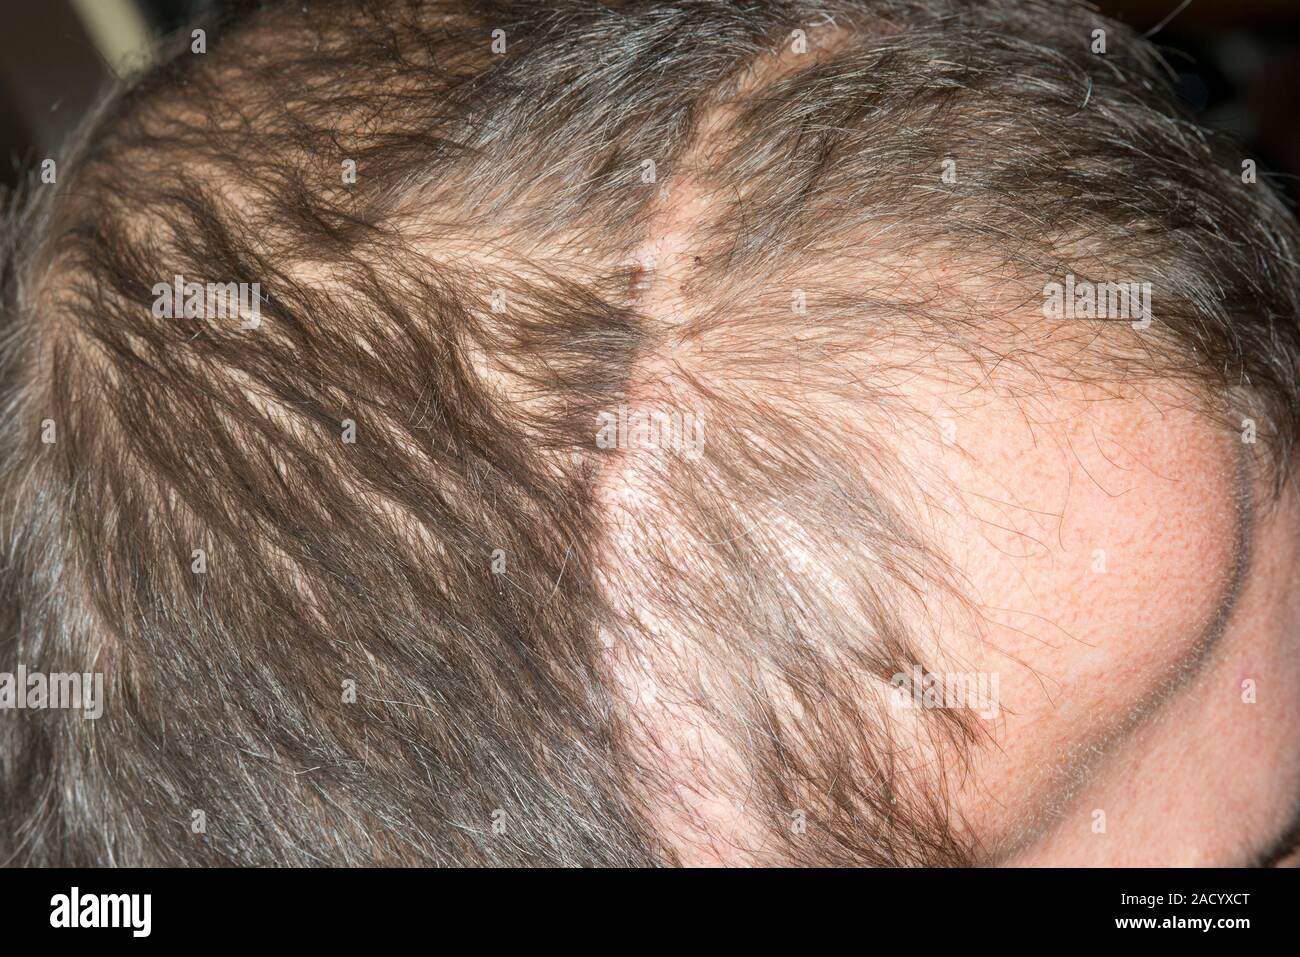 La cicatrice chirurgica sul cuoio capelluto. Close-up della testa di un  43-anno-vecchio paziente di sesso maschile con una cicatrice lasciata dopo  un intervento chirurgico per rimuovere un meningioma. Il meningioma si tumo